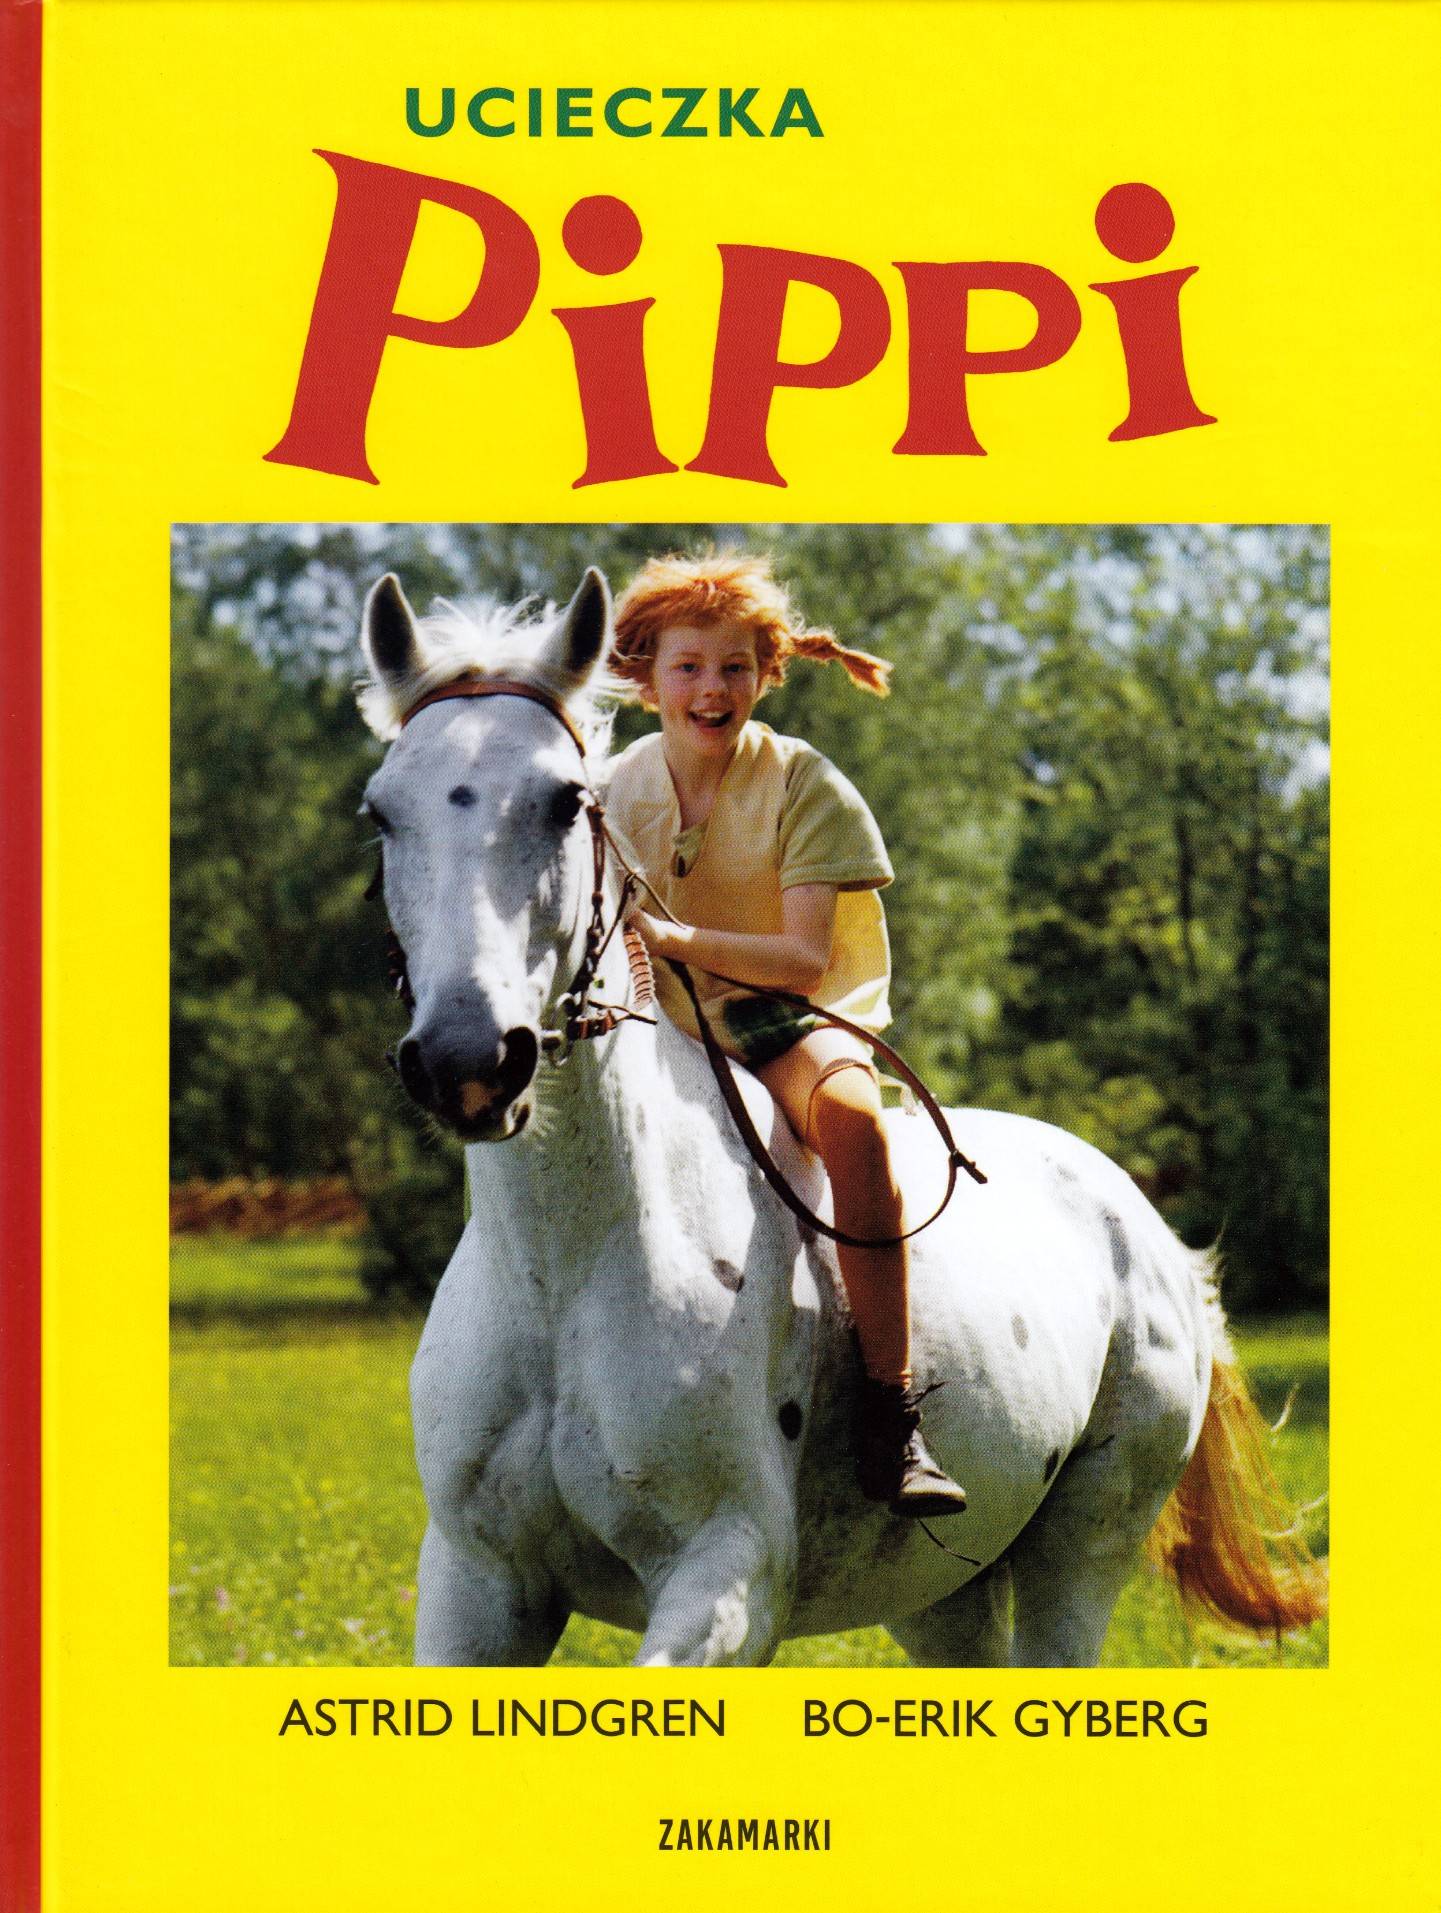 Ucieczka Pippi